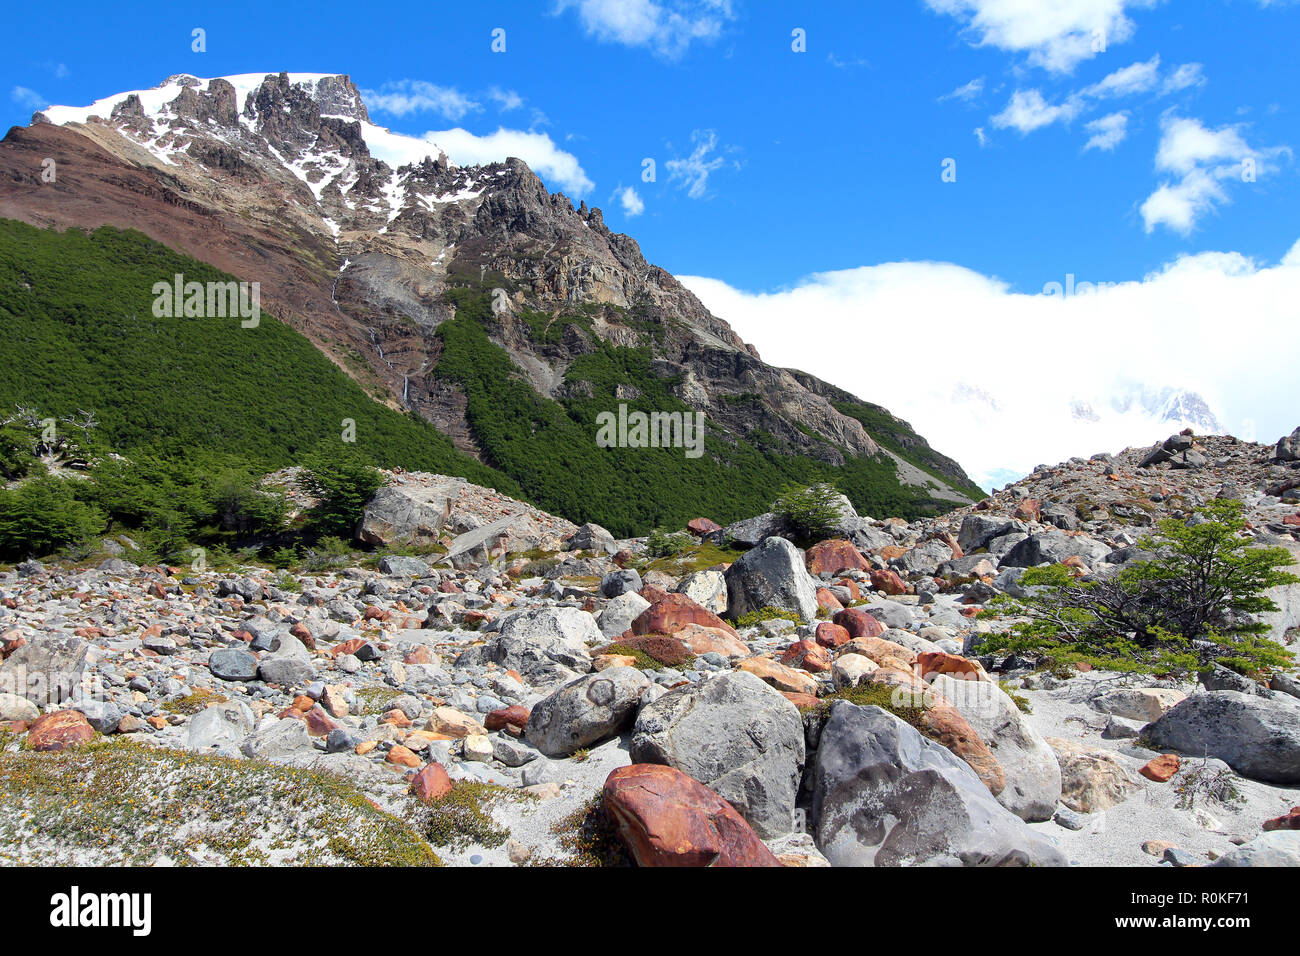 Les roches rouges ferreux oxydés le long d'un chemin de randonnée de montagne près de El Chalten, Argentine Banque D'Images